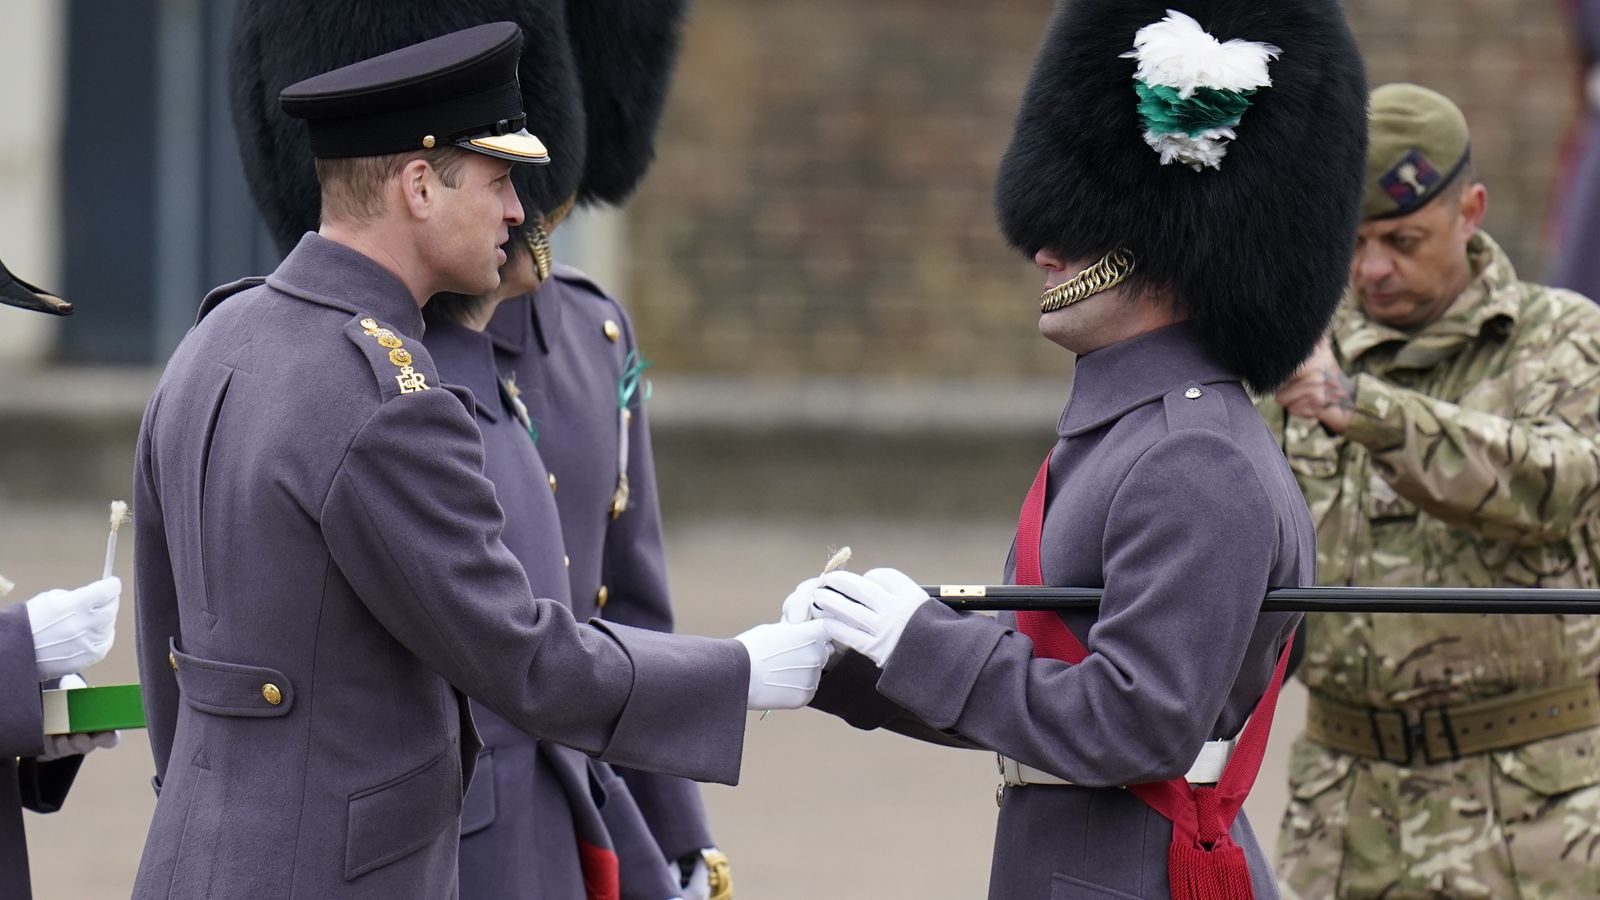 Książę William i Kate, księżna Walii odwiedzają walijską gwardię podczas parady św. Dawida |  Wiadomości z Wielkiej Brytanii